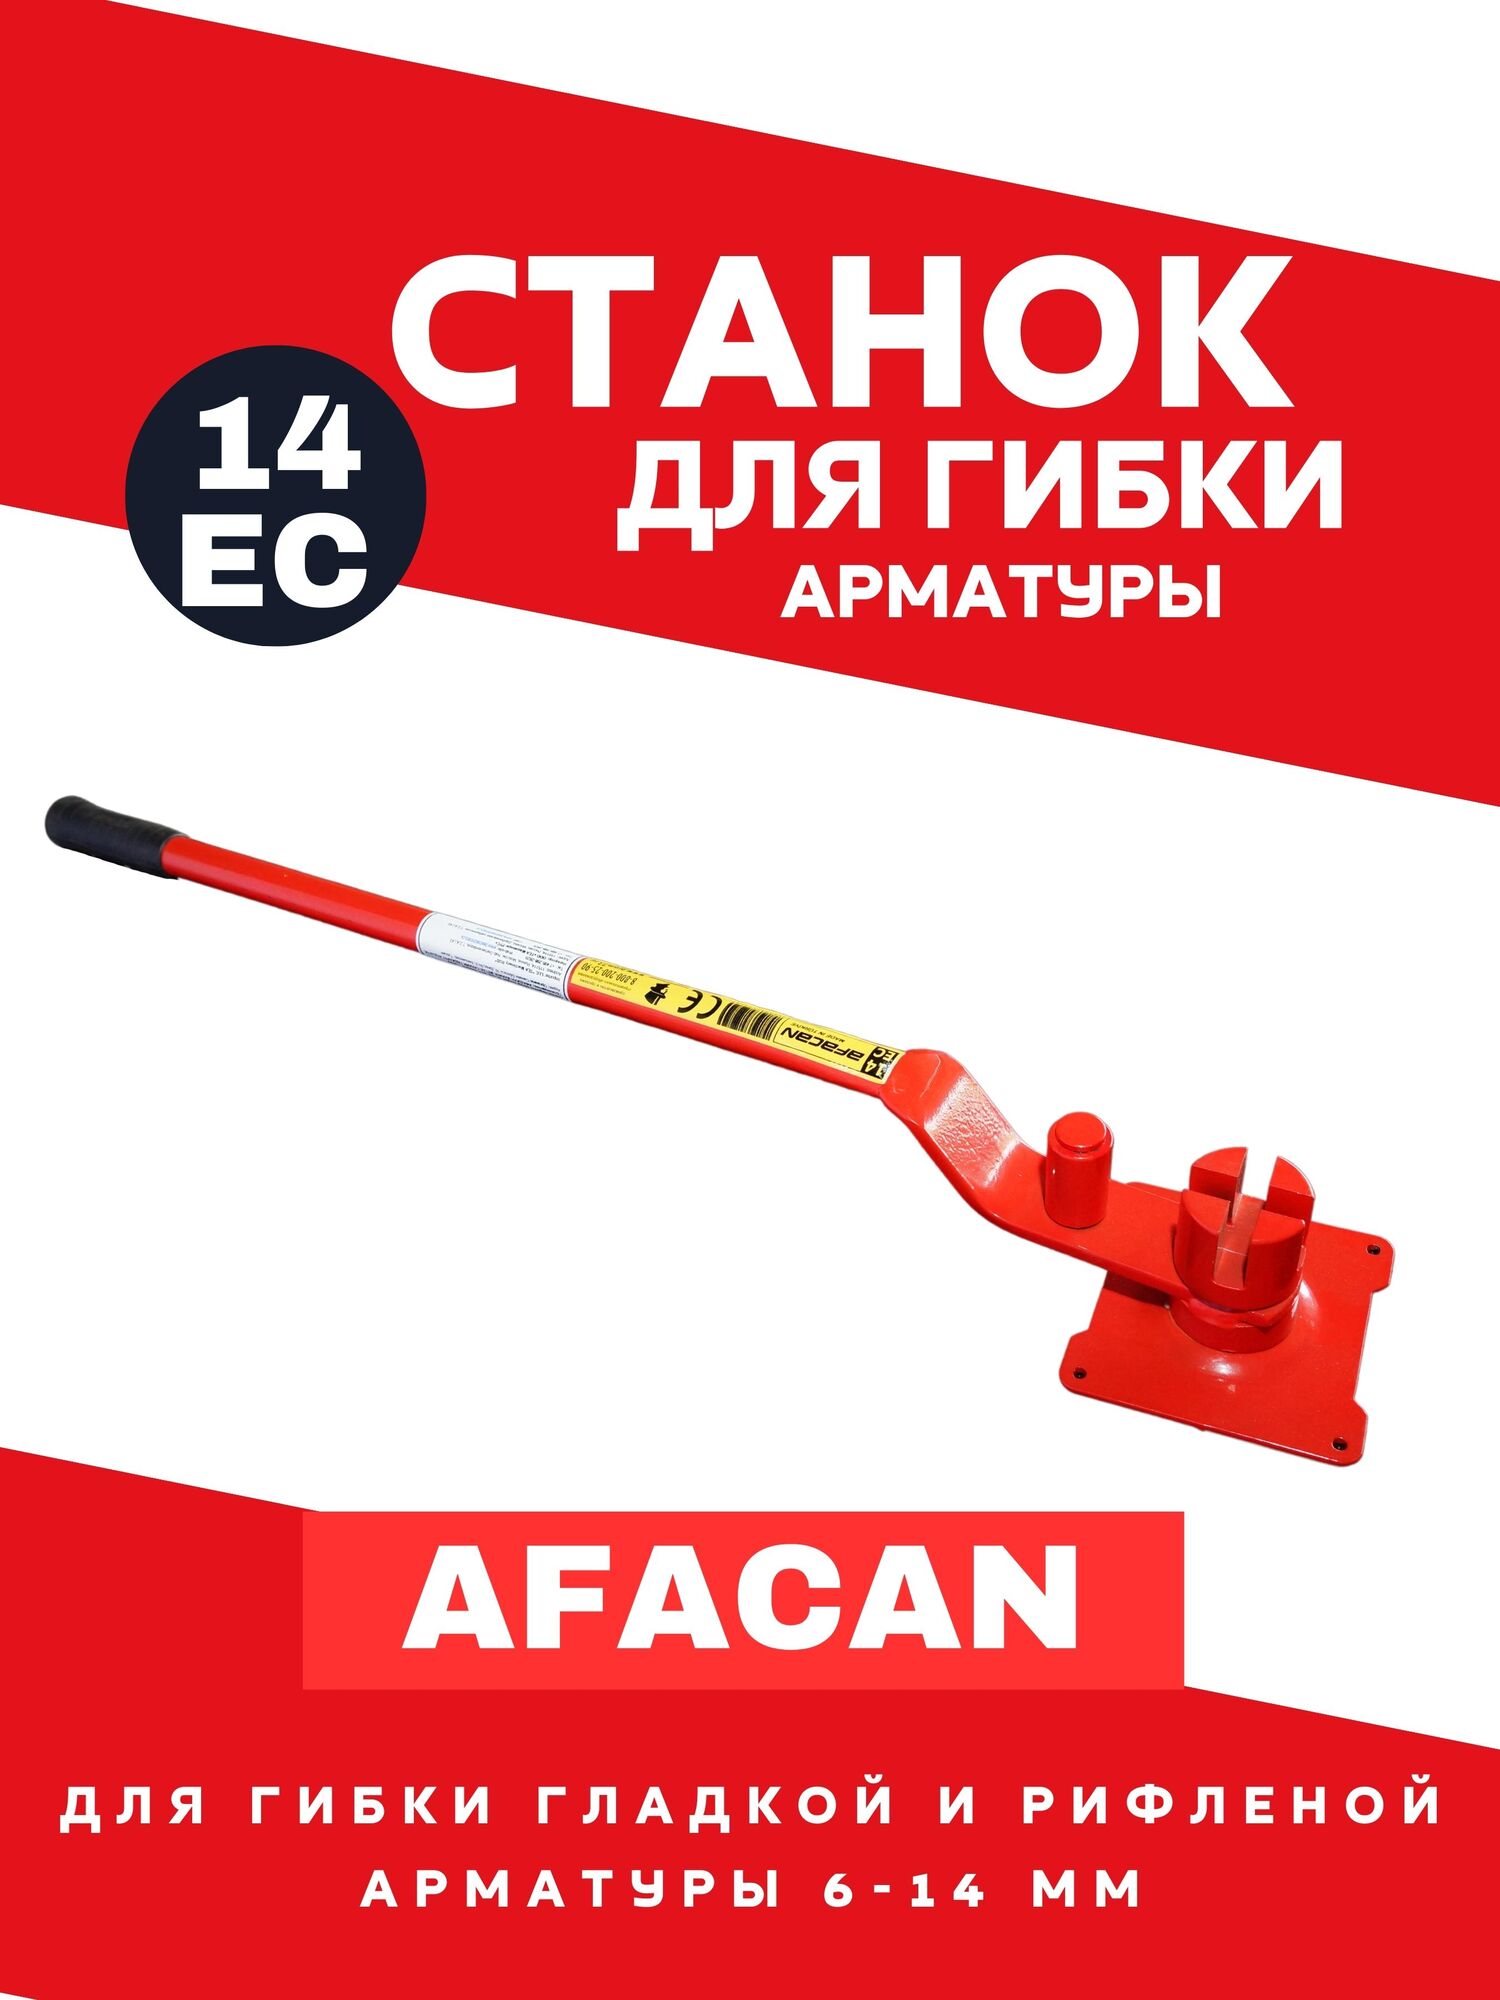 Ручной станок для гибки арматуры AFACAN 14ЕС